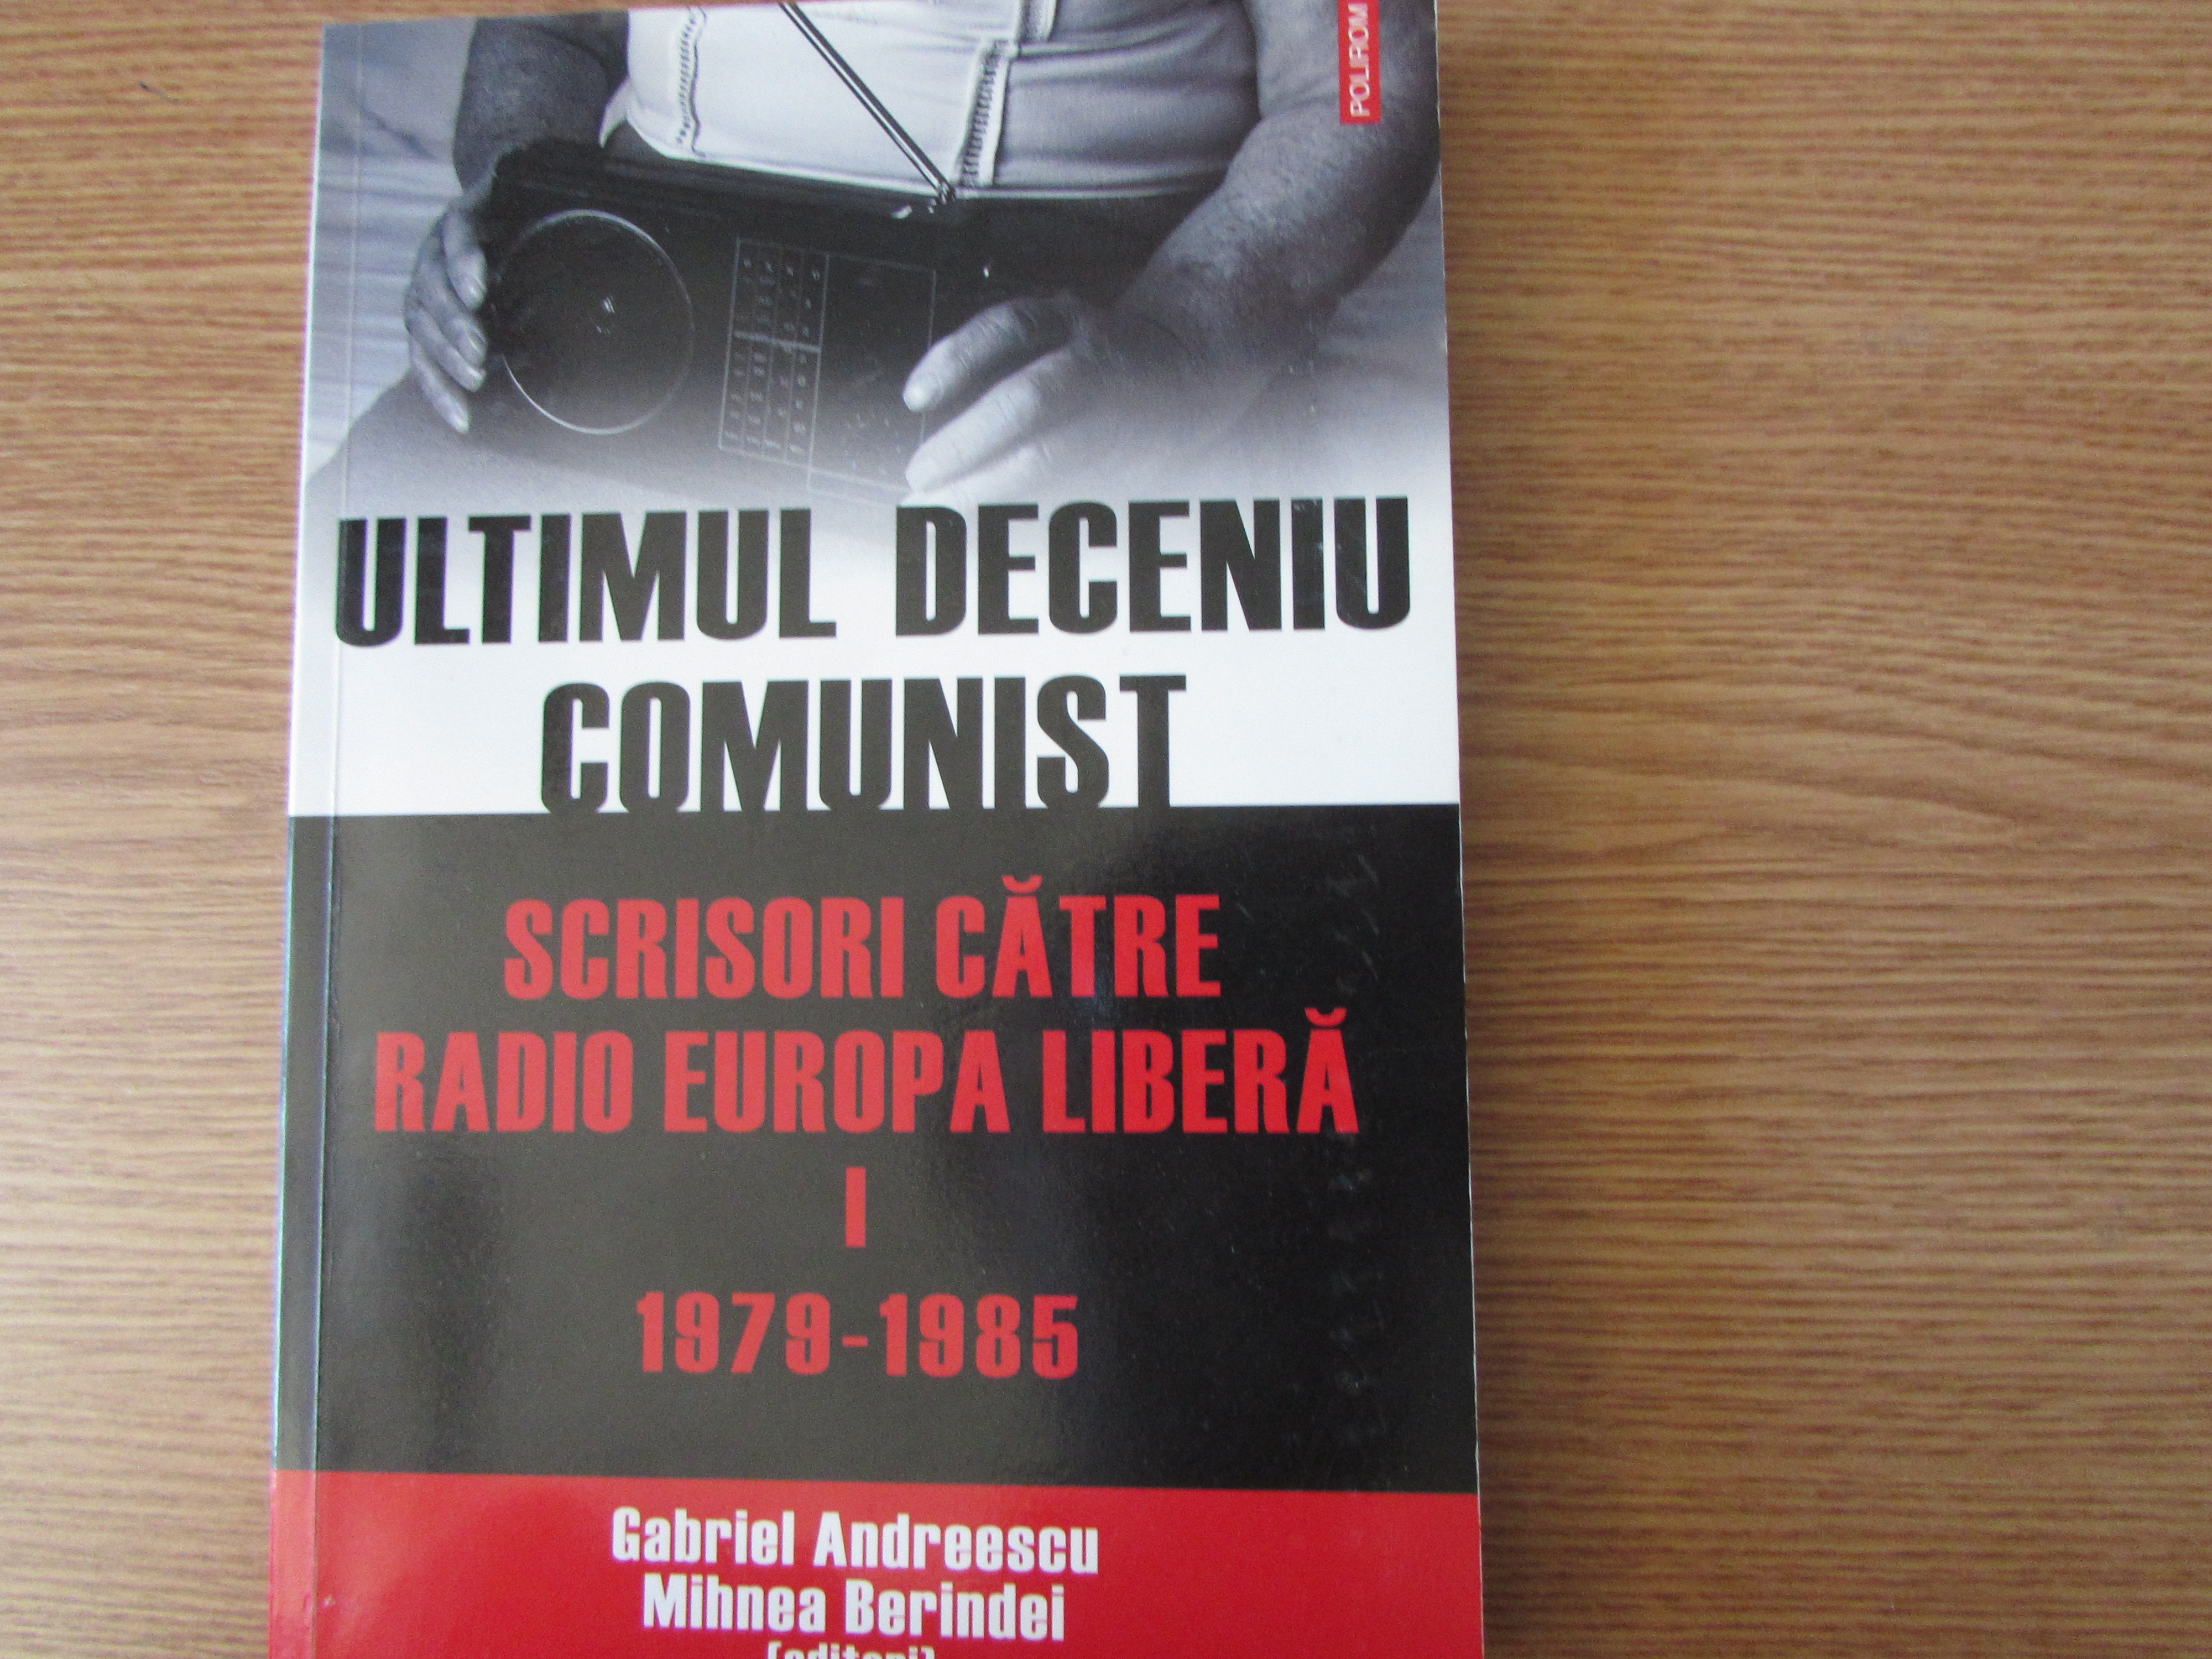 Coperta primului volum al culegerii Ultimul deceniu comunist: Scrisori către Radio Europa Liberă, editat de Gabriel Andreescu și Mihnea Berindei (Iași: Polirom, 2010)